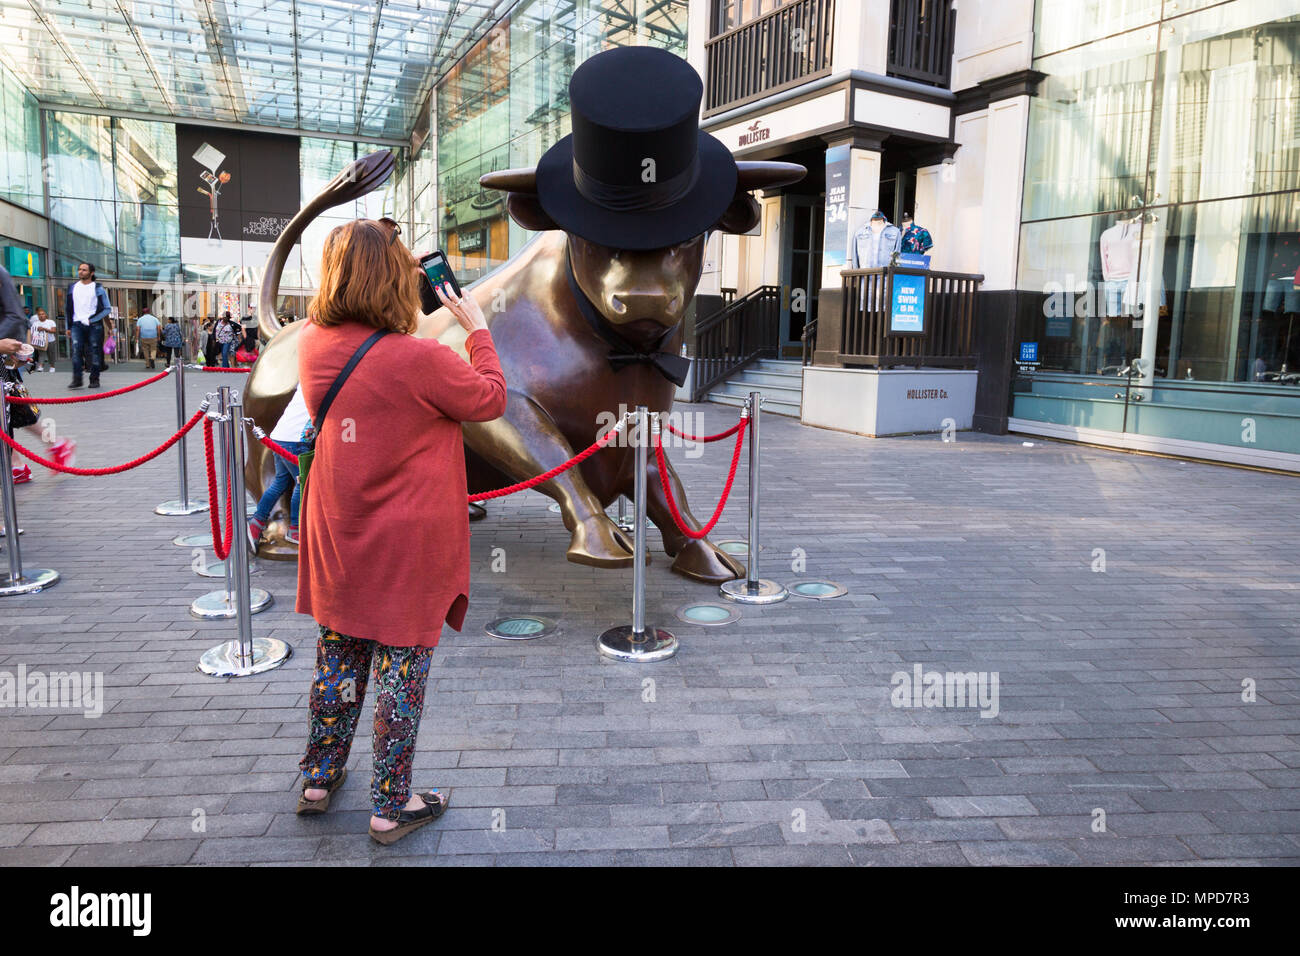 Femme de prendre une photo de la statue de taureau dans les arènes Birmingham UK Banque D'Images